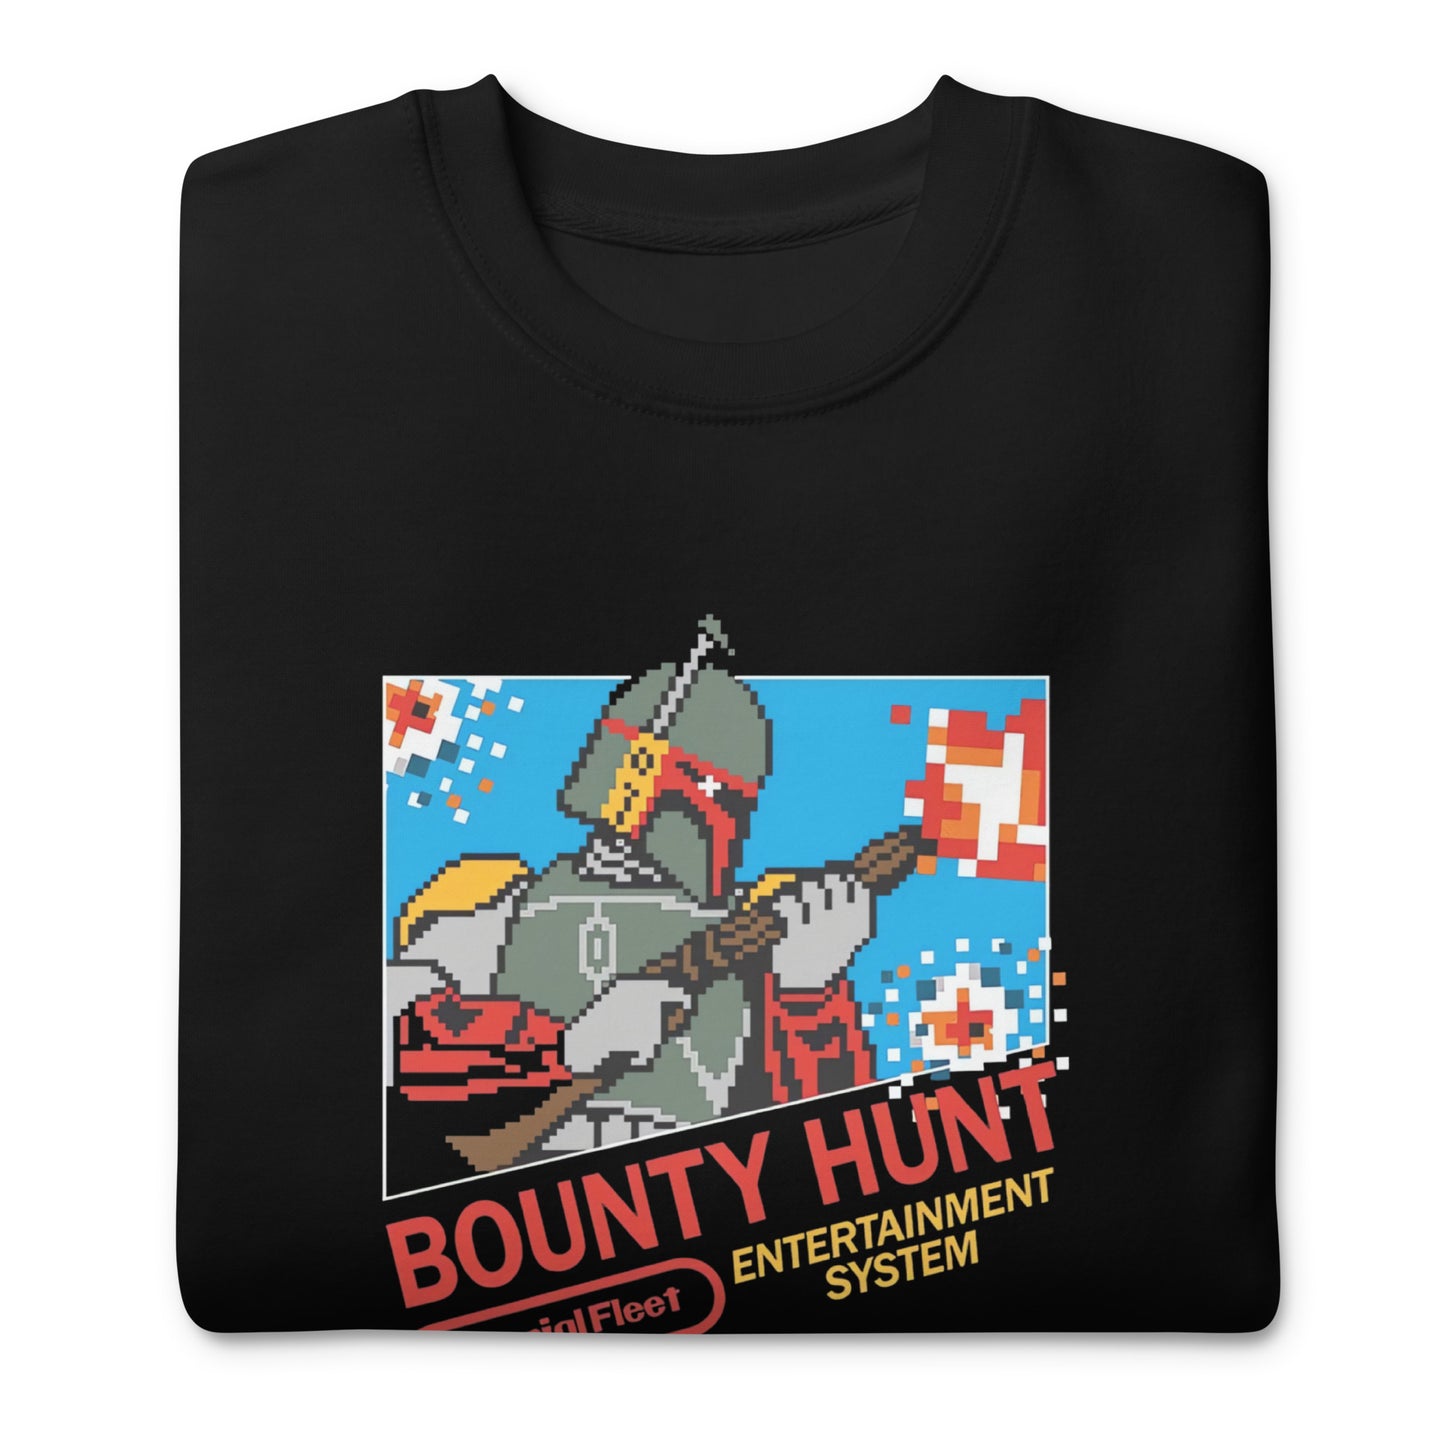 Suéter Nes Bounty Hunt, Disponible en Superstar, la mejor tienda online para comprar tu merch favorita, la mejor Calidad, compra Ahora en Superstar!